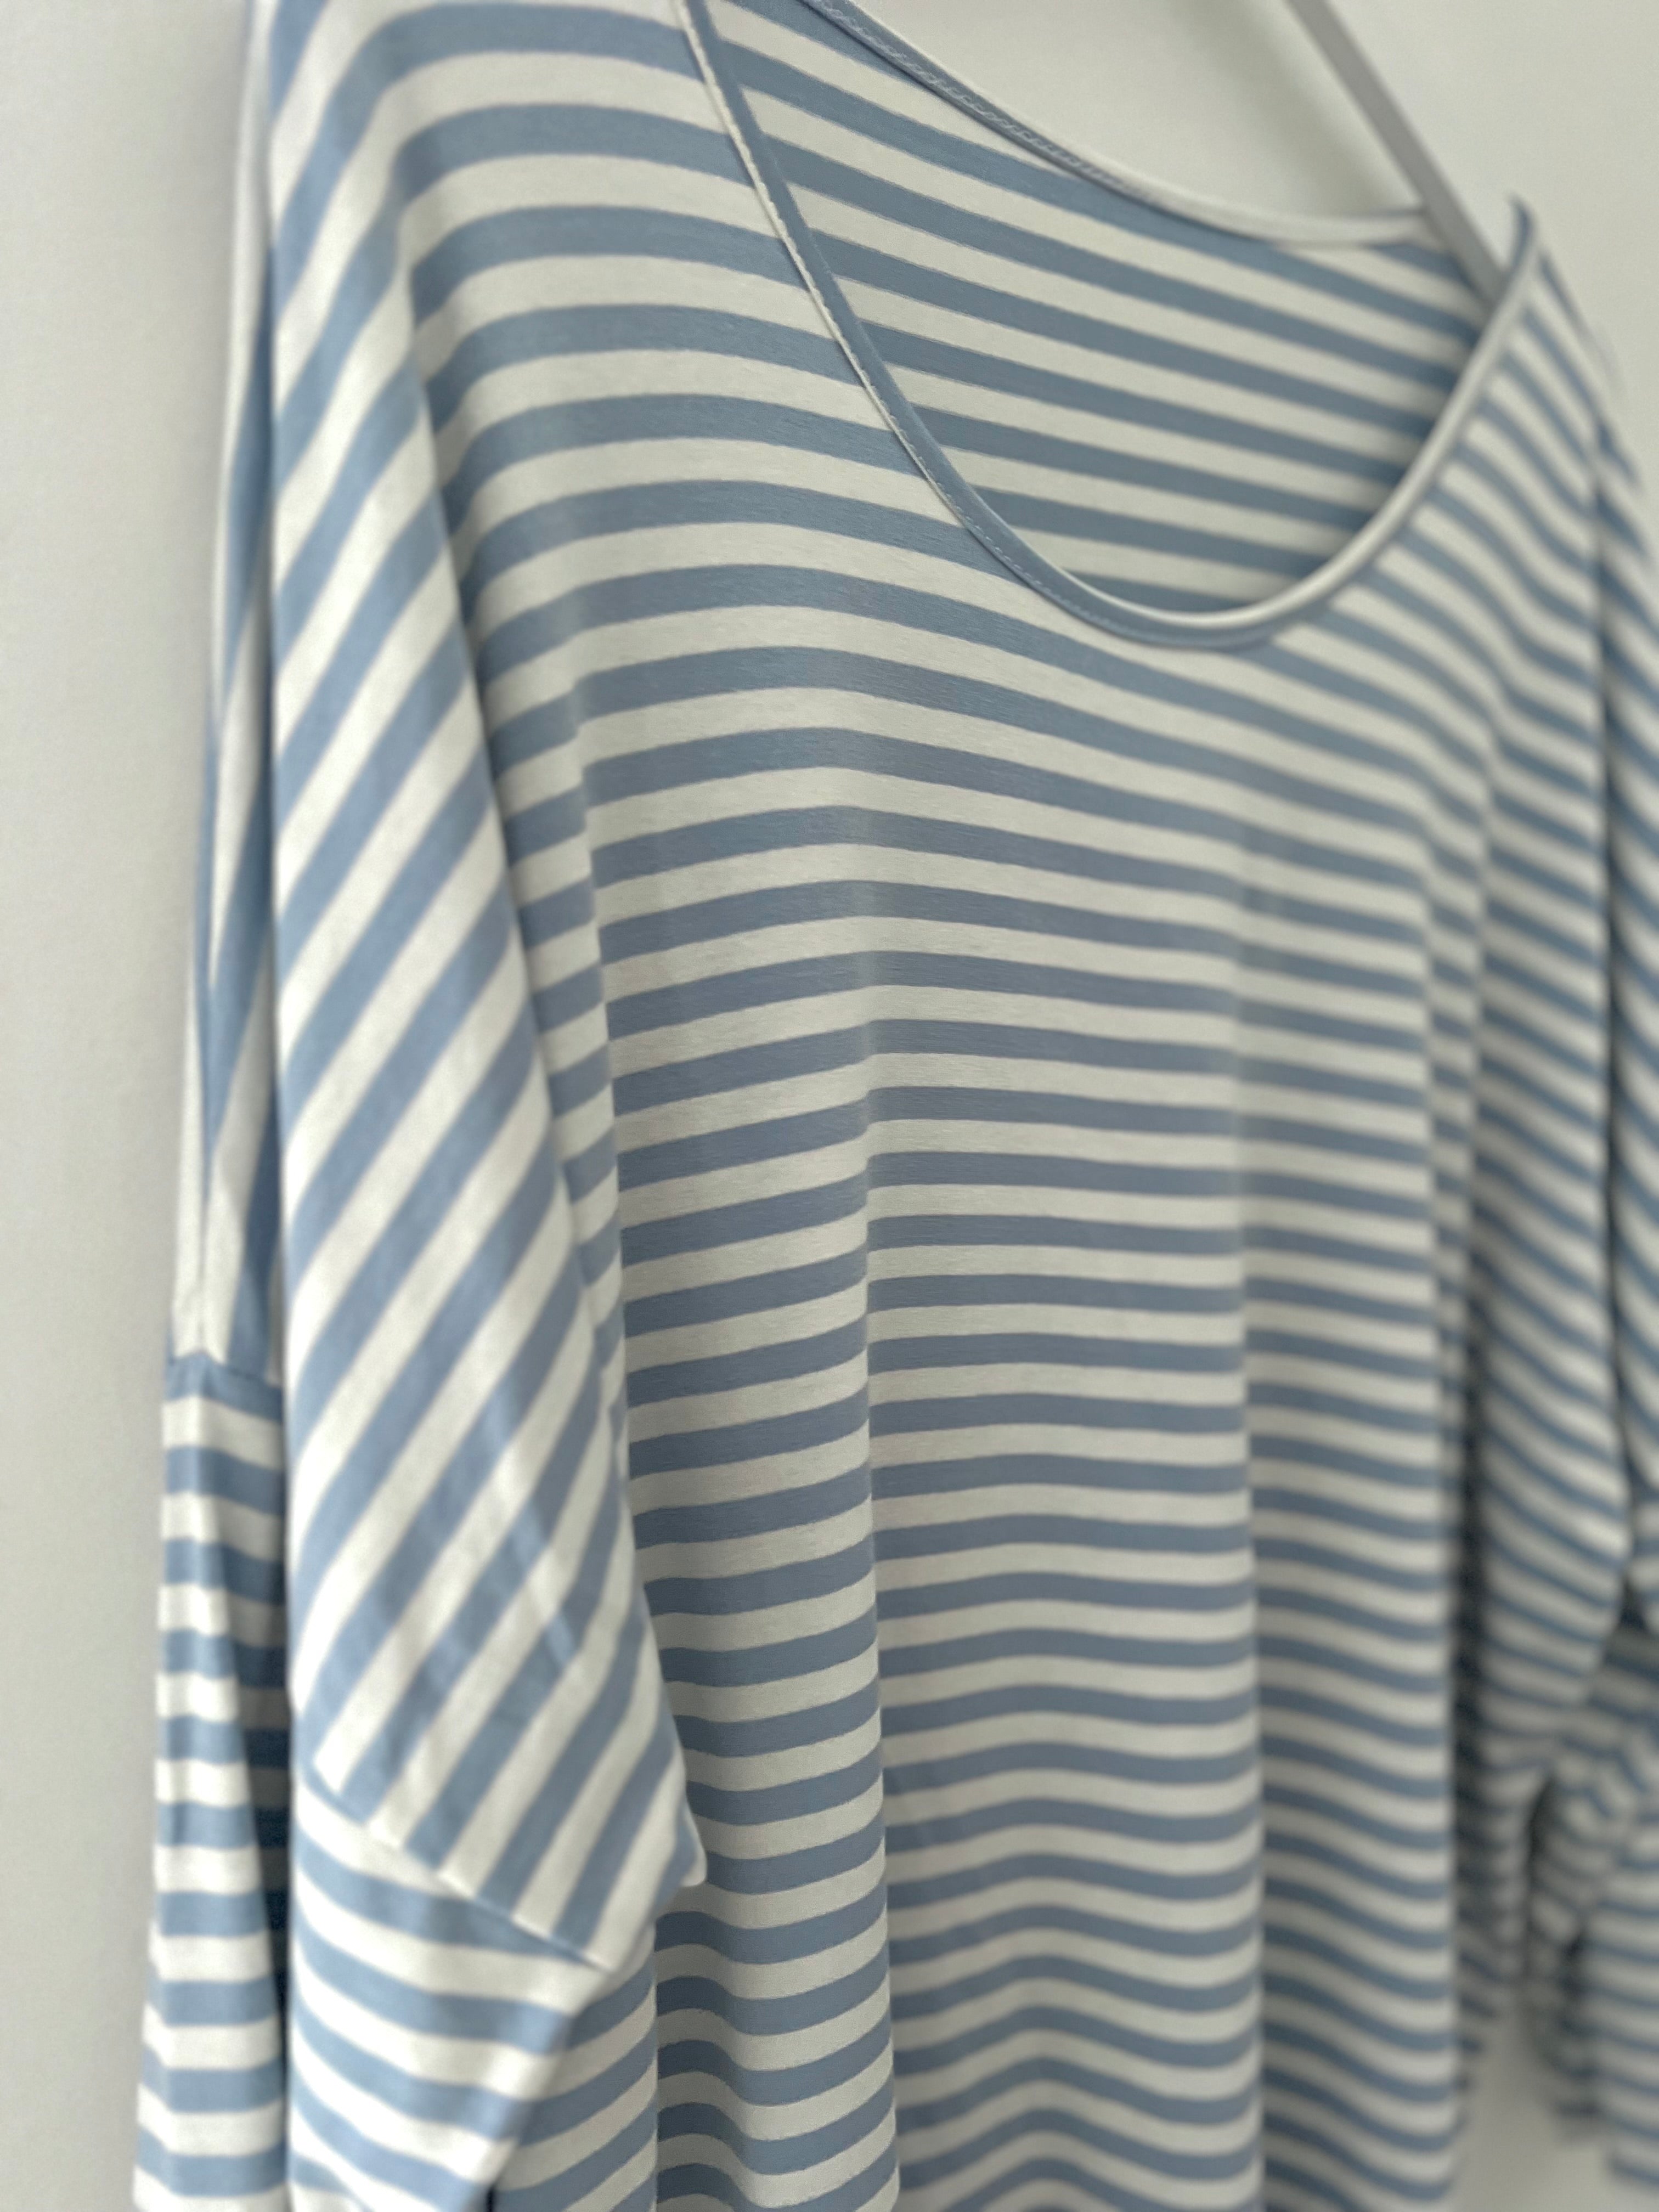 Oversized Stripe Top in Light Blue & White